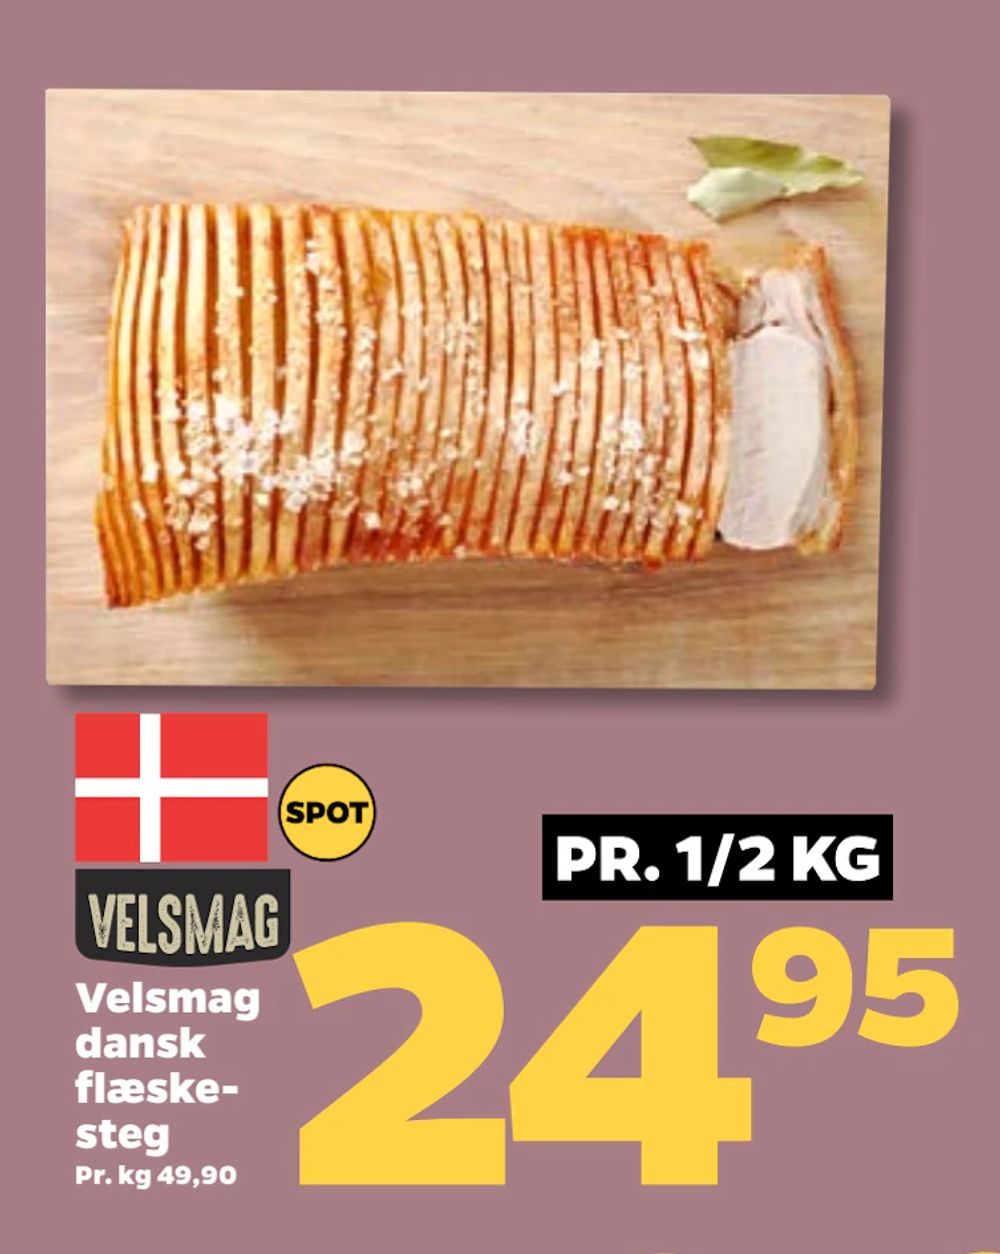 Tilbud på Velsmag dansk flæskesteg fra Netto til 24,95 kr.